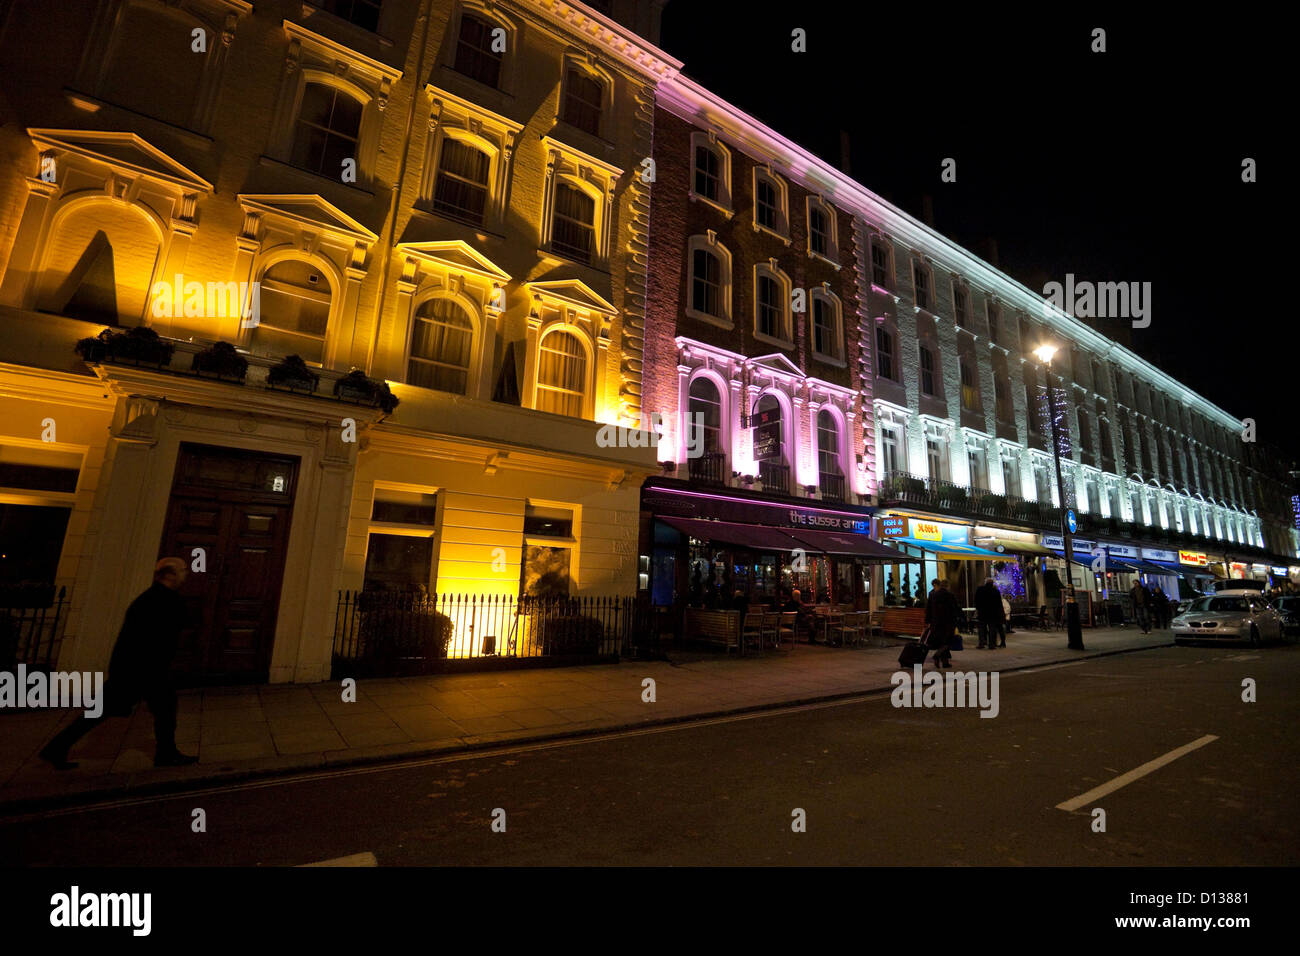 Night street scene on London Street, Paddington, London, England, UK Stock Photo